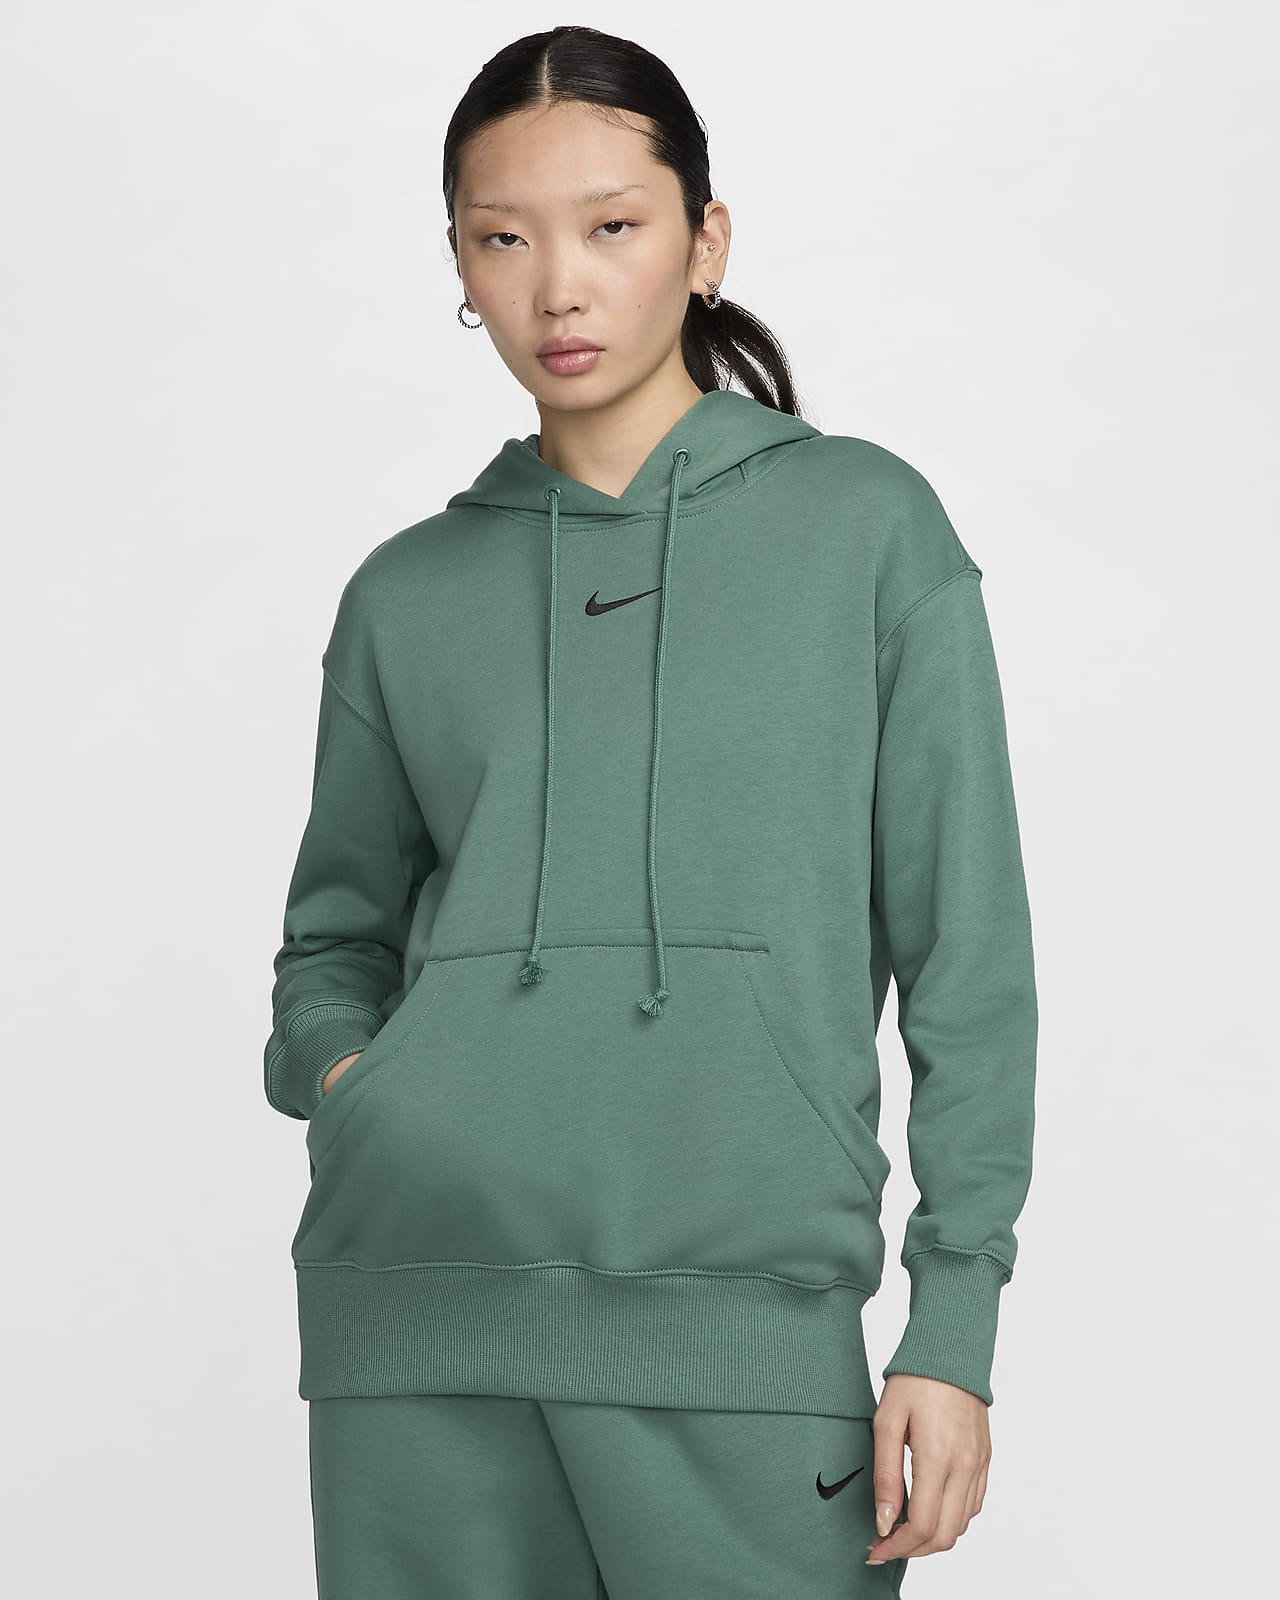 Nike Sportswear Phoenix Fleece Women's Oversized Pullover French Terry Hoodie